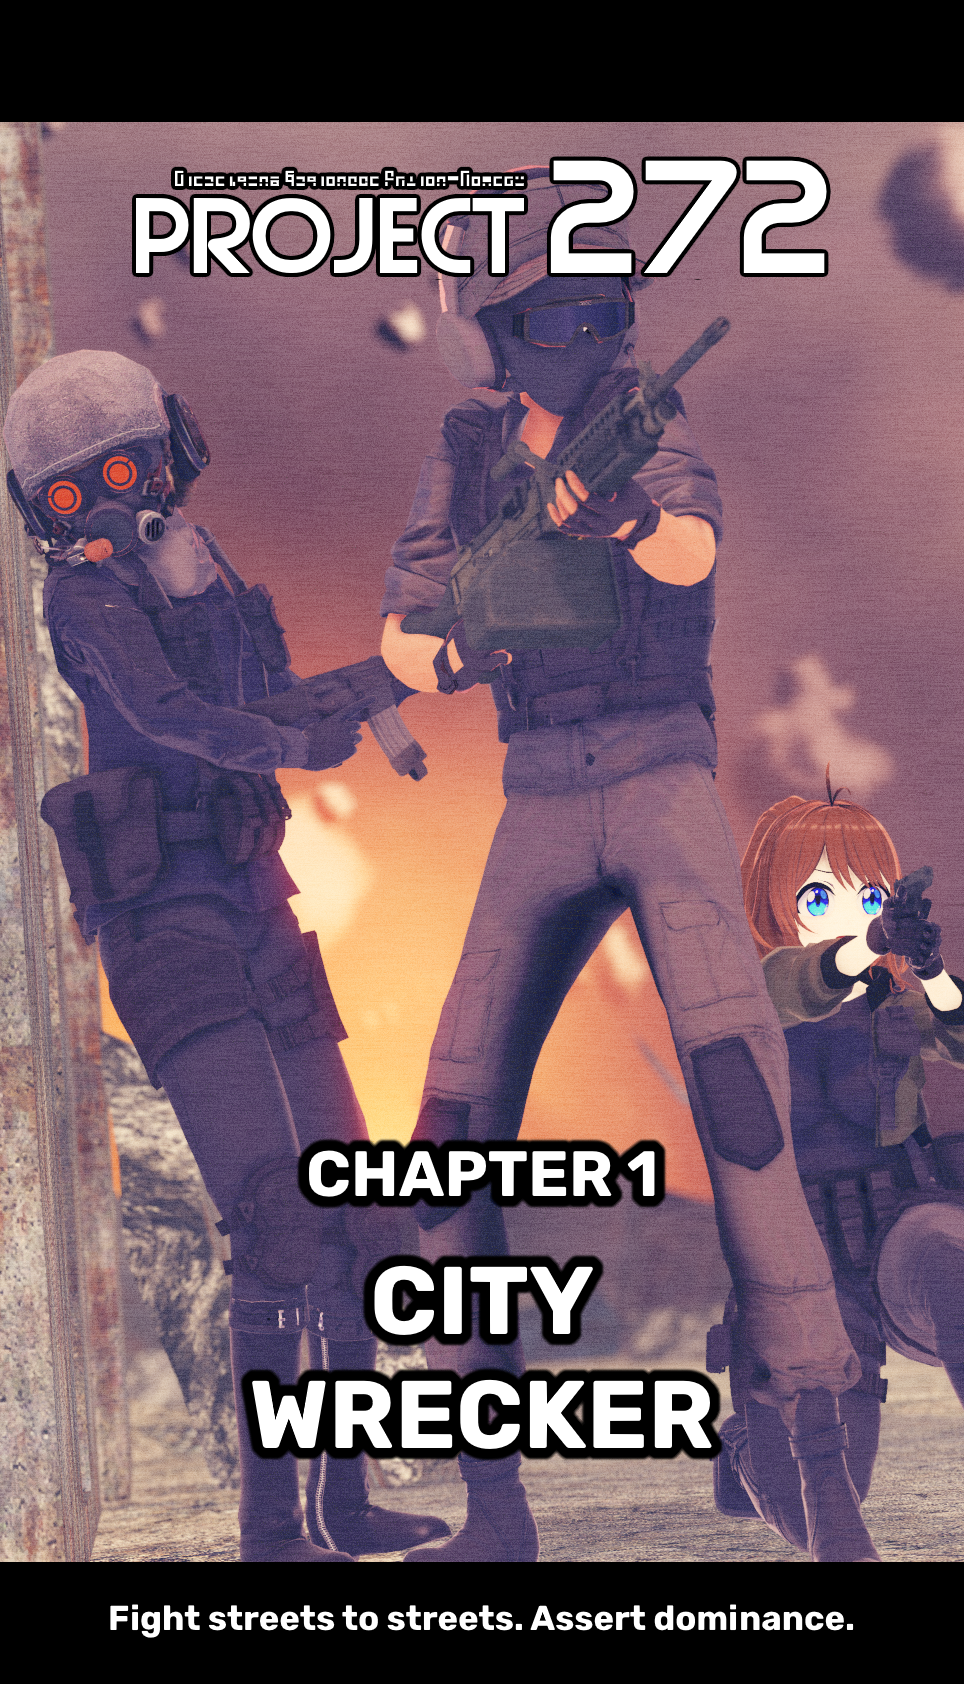 Chapter 1: City Wrecker